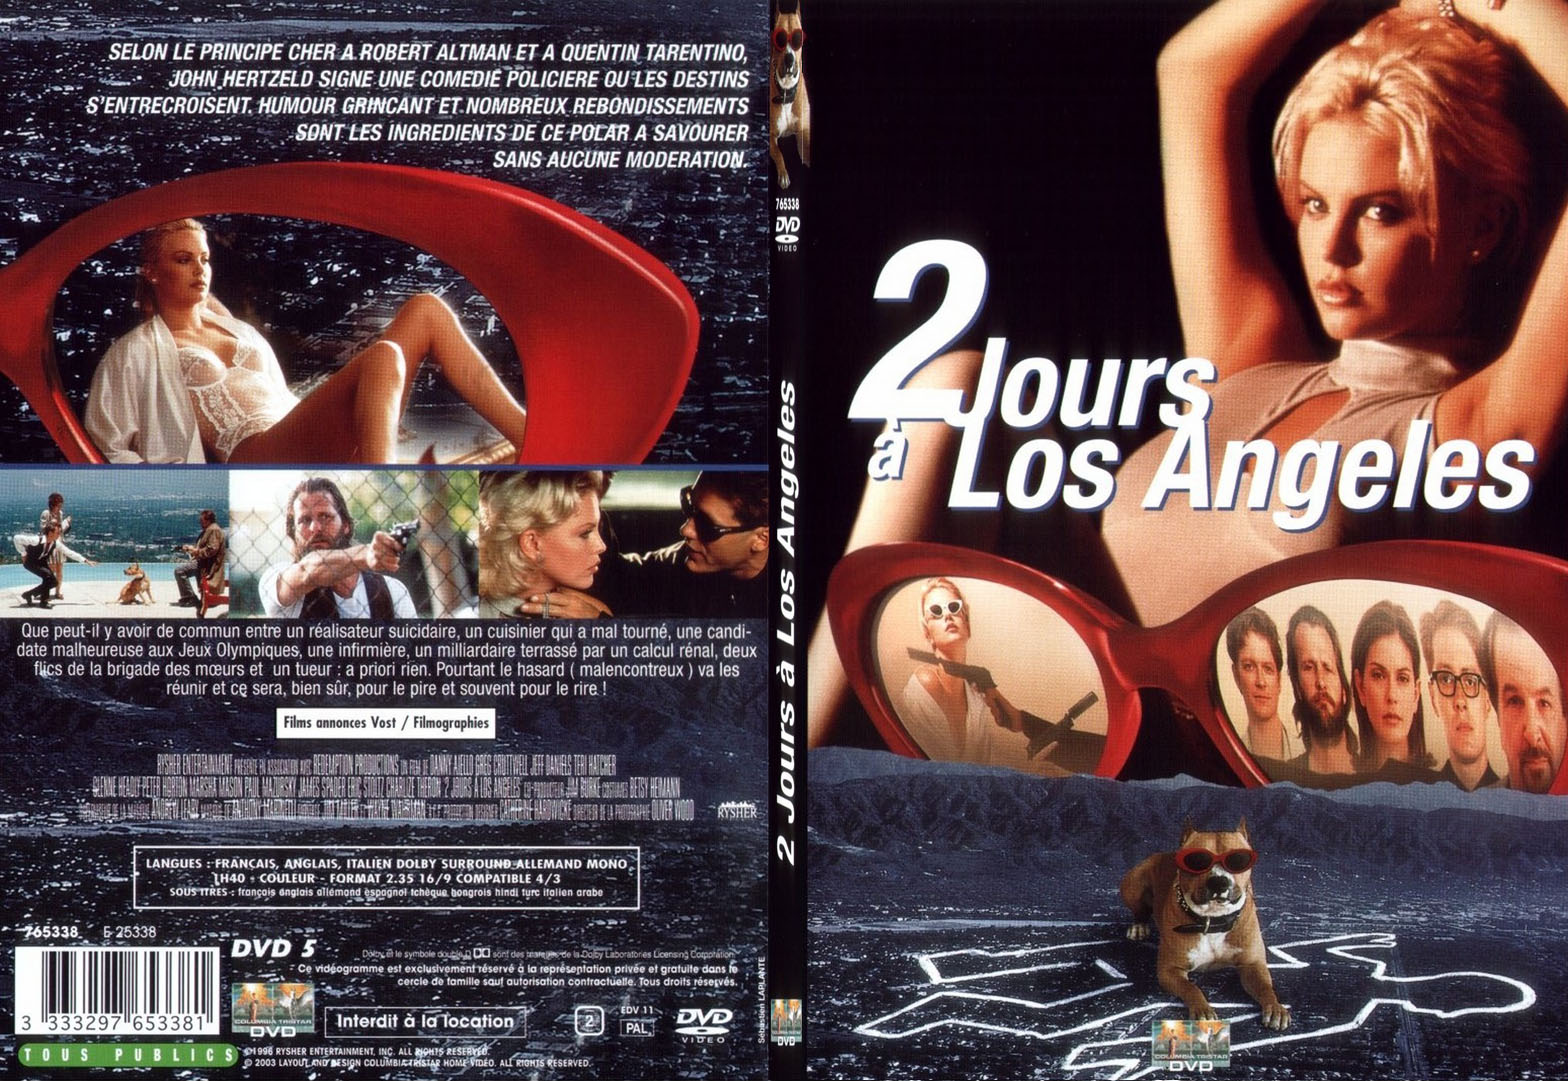 Jaquette DVD 2 jours  Los Angeles - SLIM